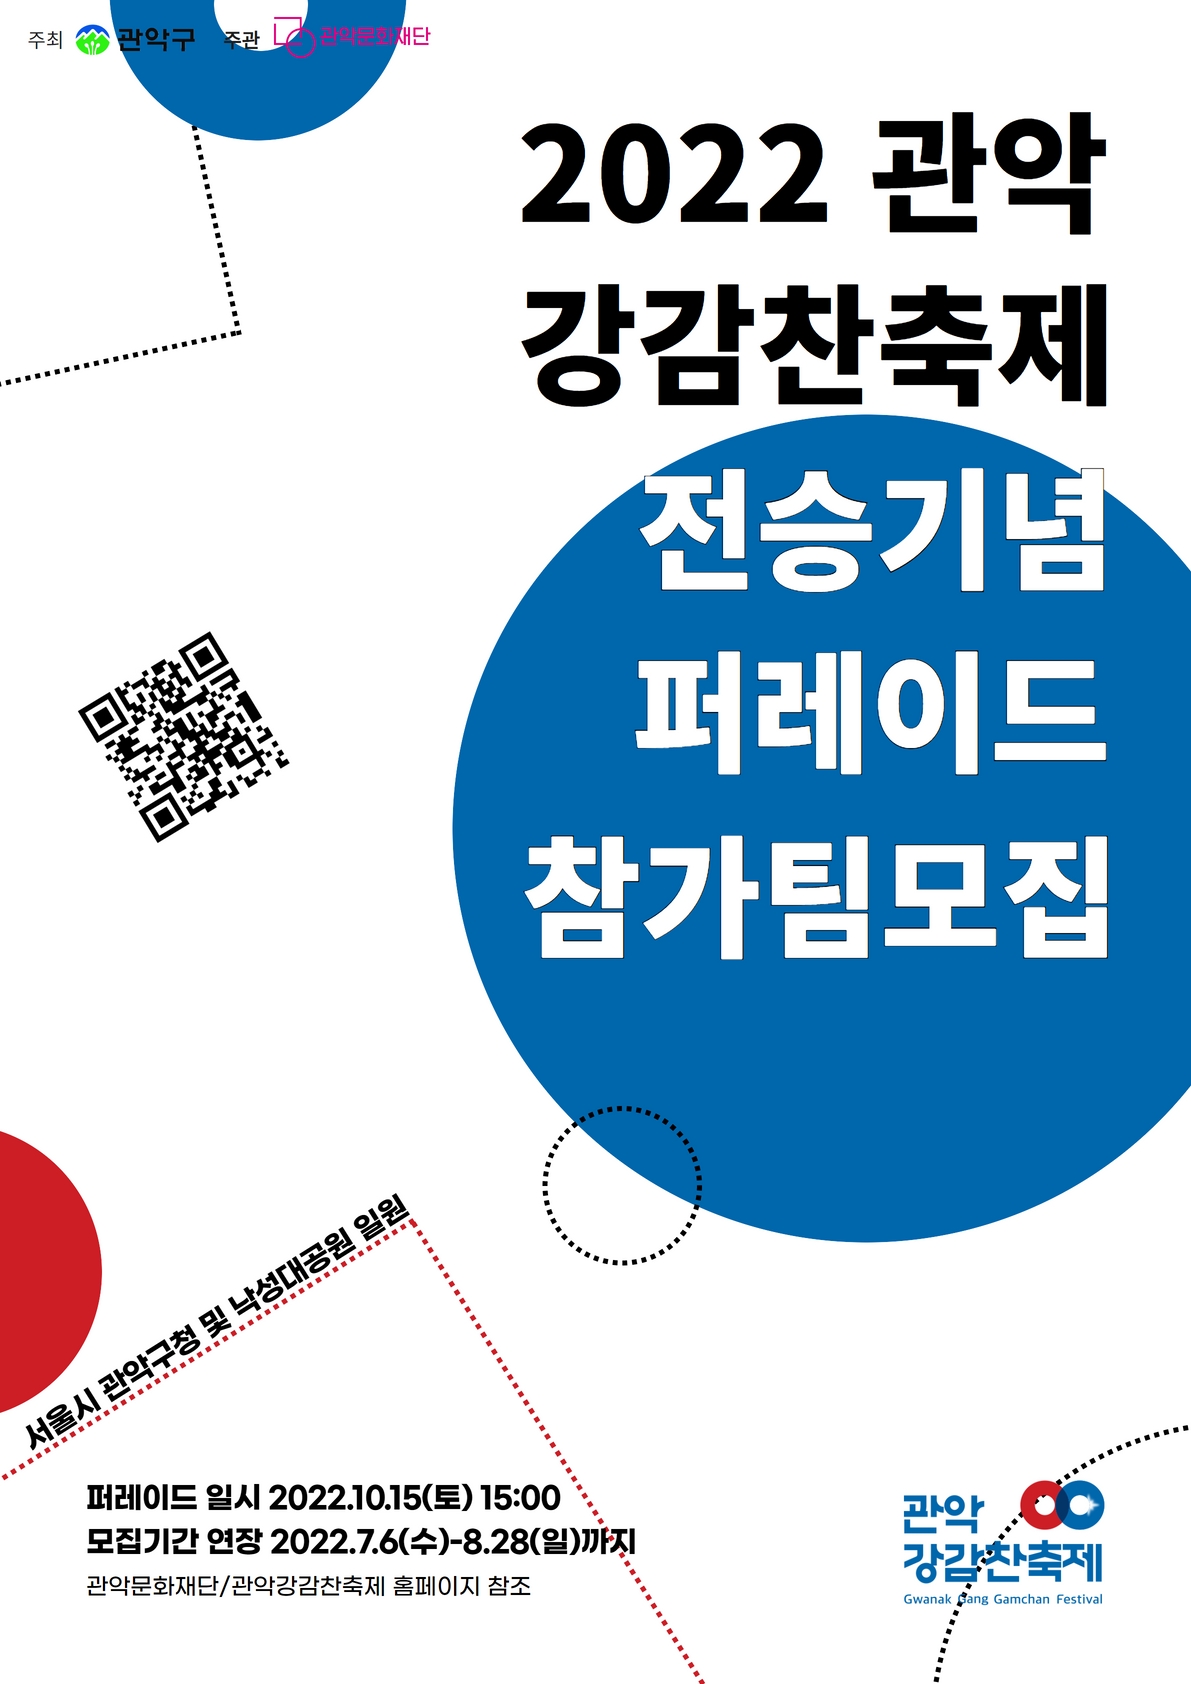 「2022 관악강감찬축제」 [전승기념 퍼레이드] 참가팀 모집 연장 공고!!(~8/28)